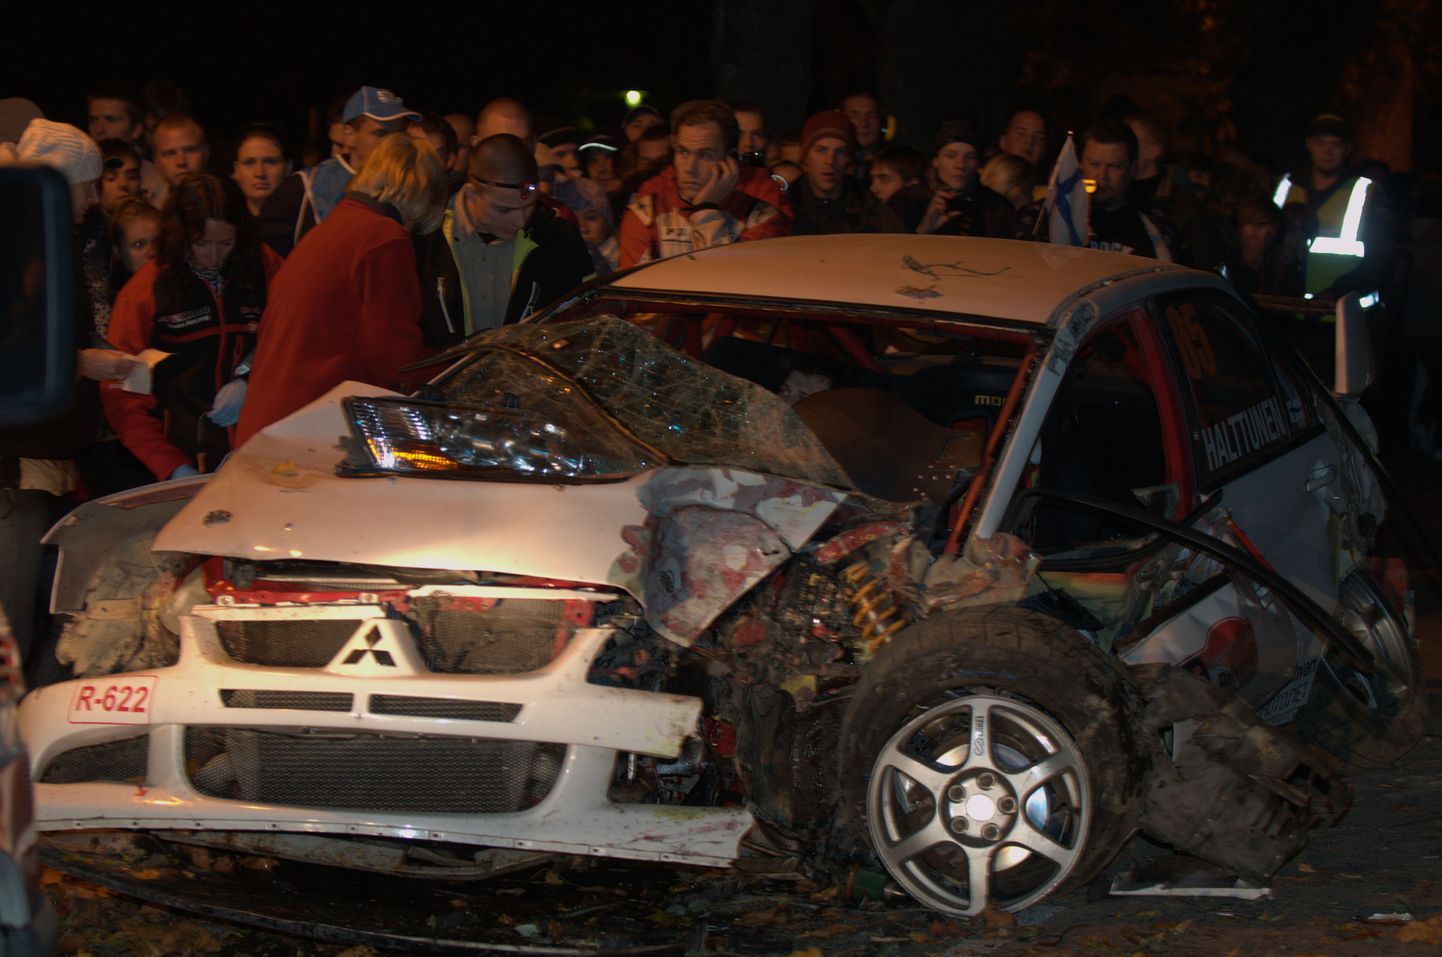 Soome rallimees Mika Halttunen tegi Saaremaa rallil raske avarii.